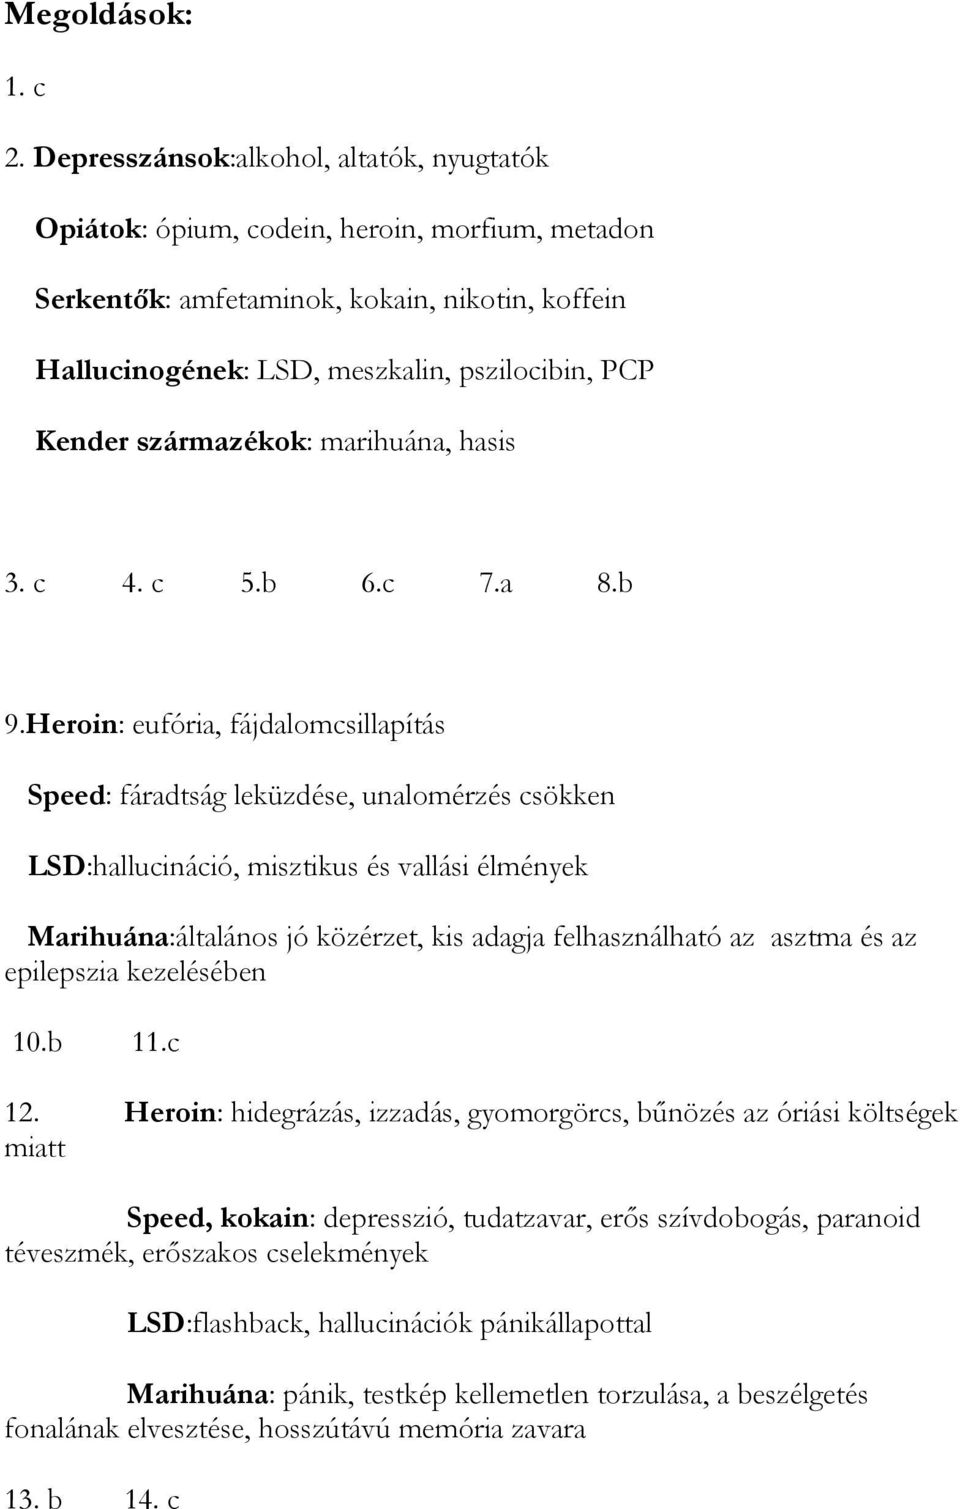 származékok: marihuána, hasis 3. c 4. c 5.b 6.c 7.a 8.b 9.